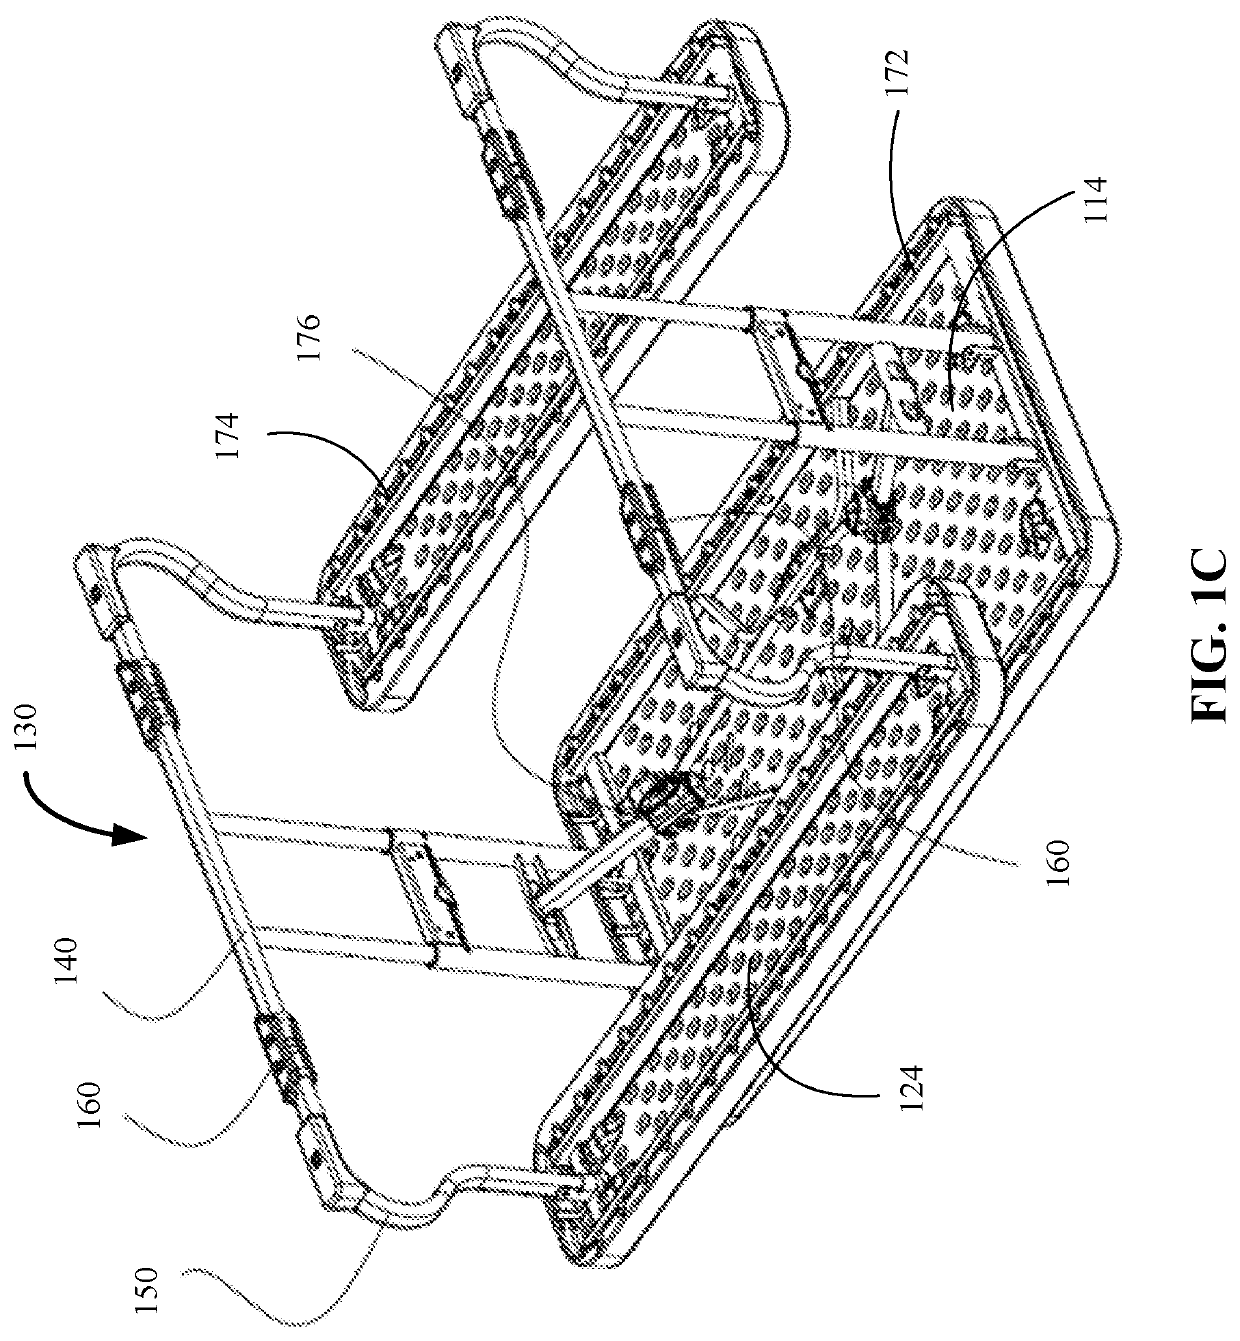 Multi-foldable picnic table